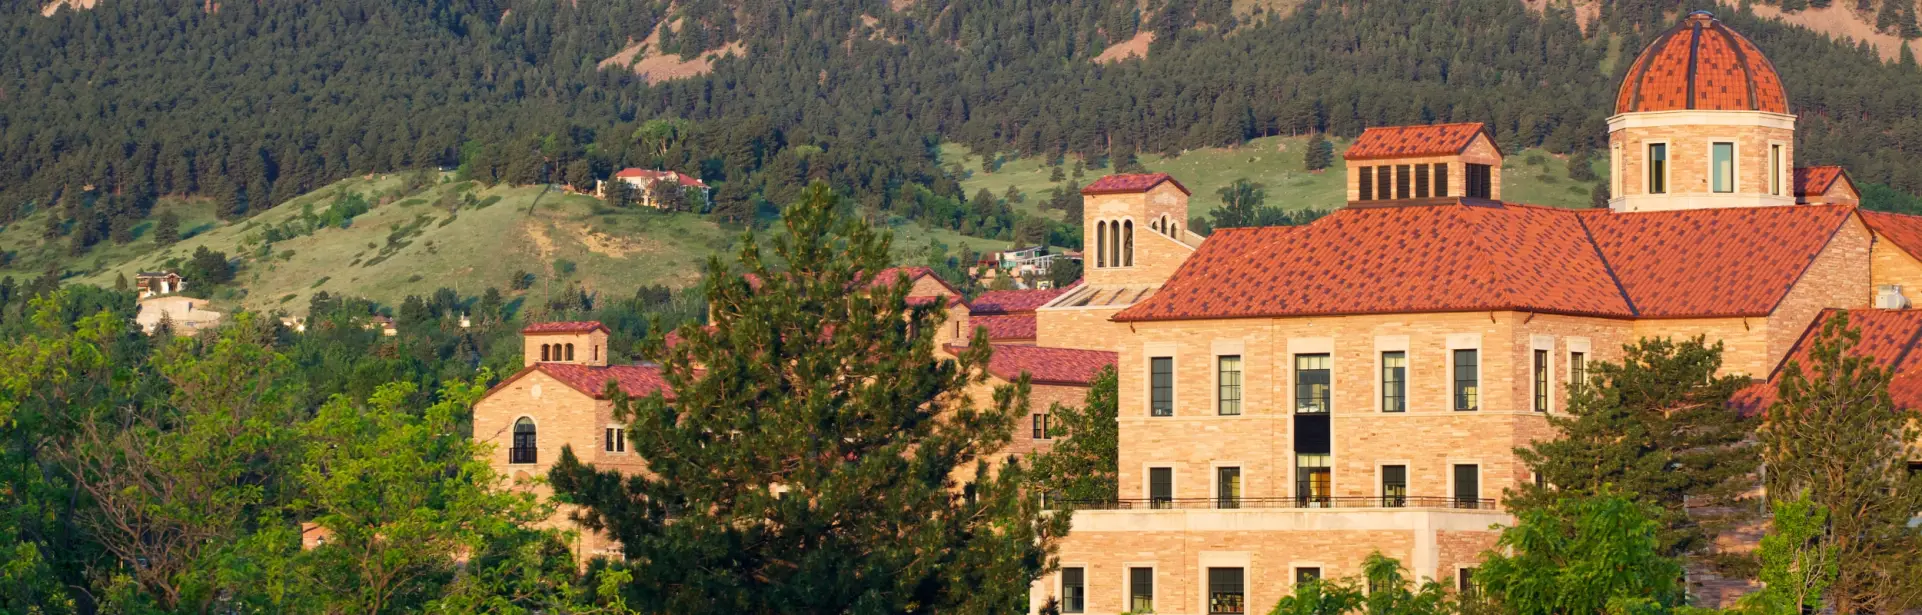 University of Colorado, Boulder (DEN, education)